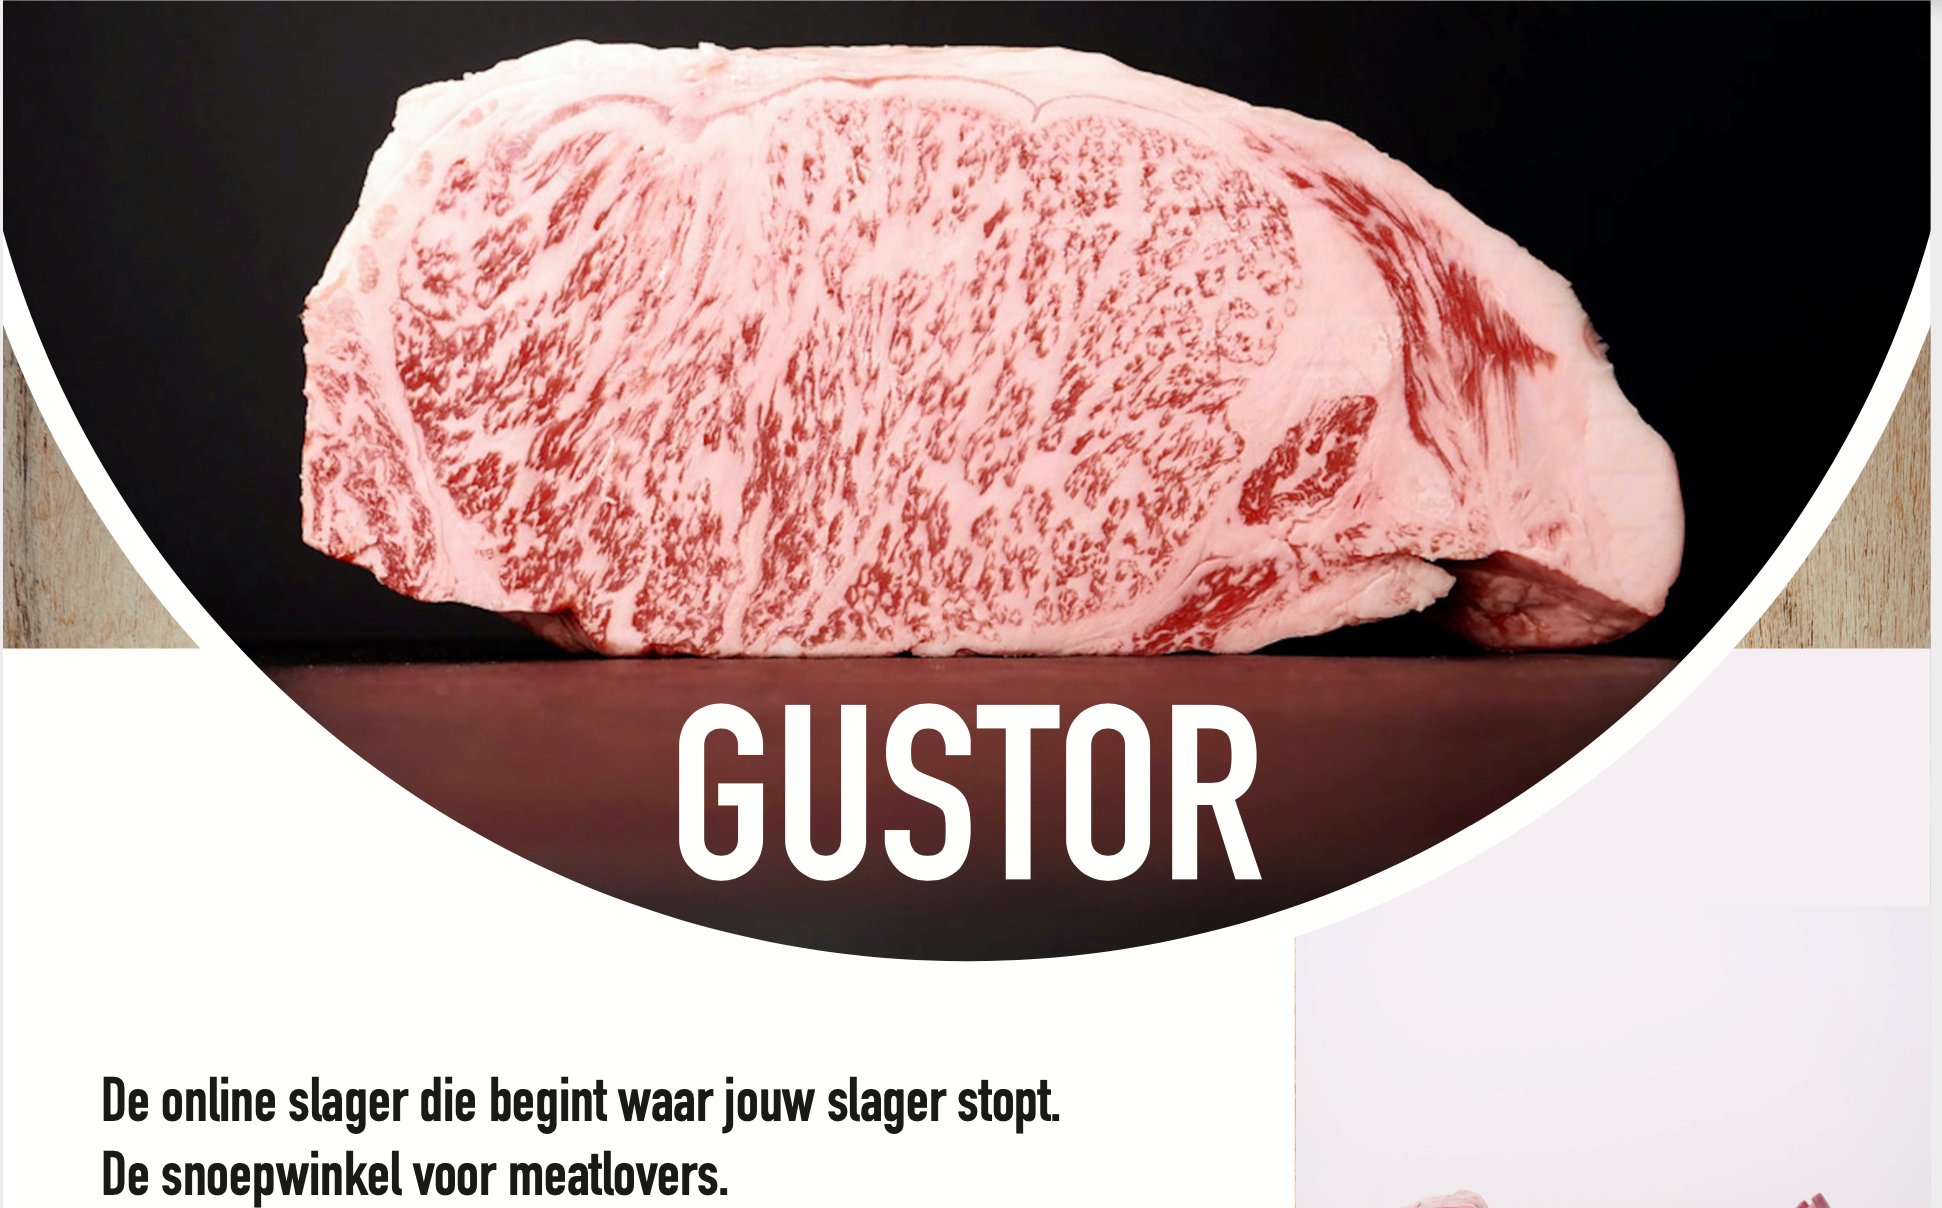 Gustor de online slager die begint waar jouw slager stopt.